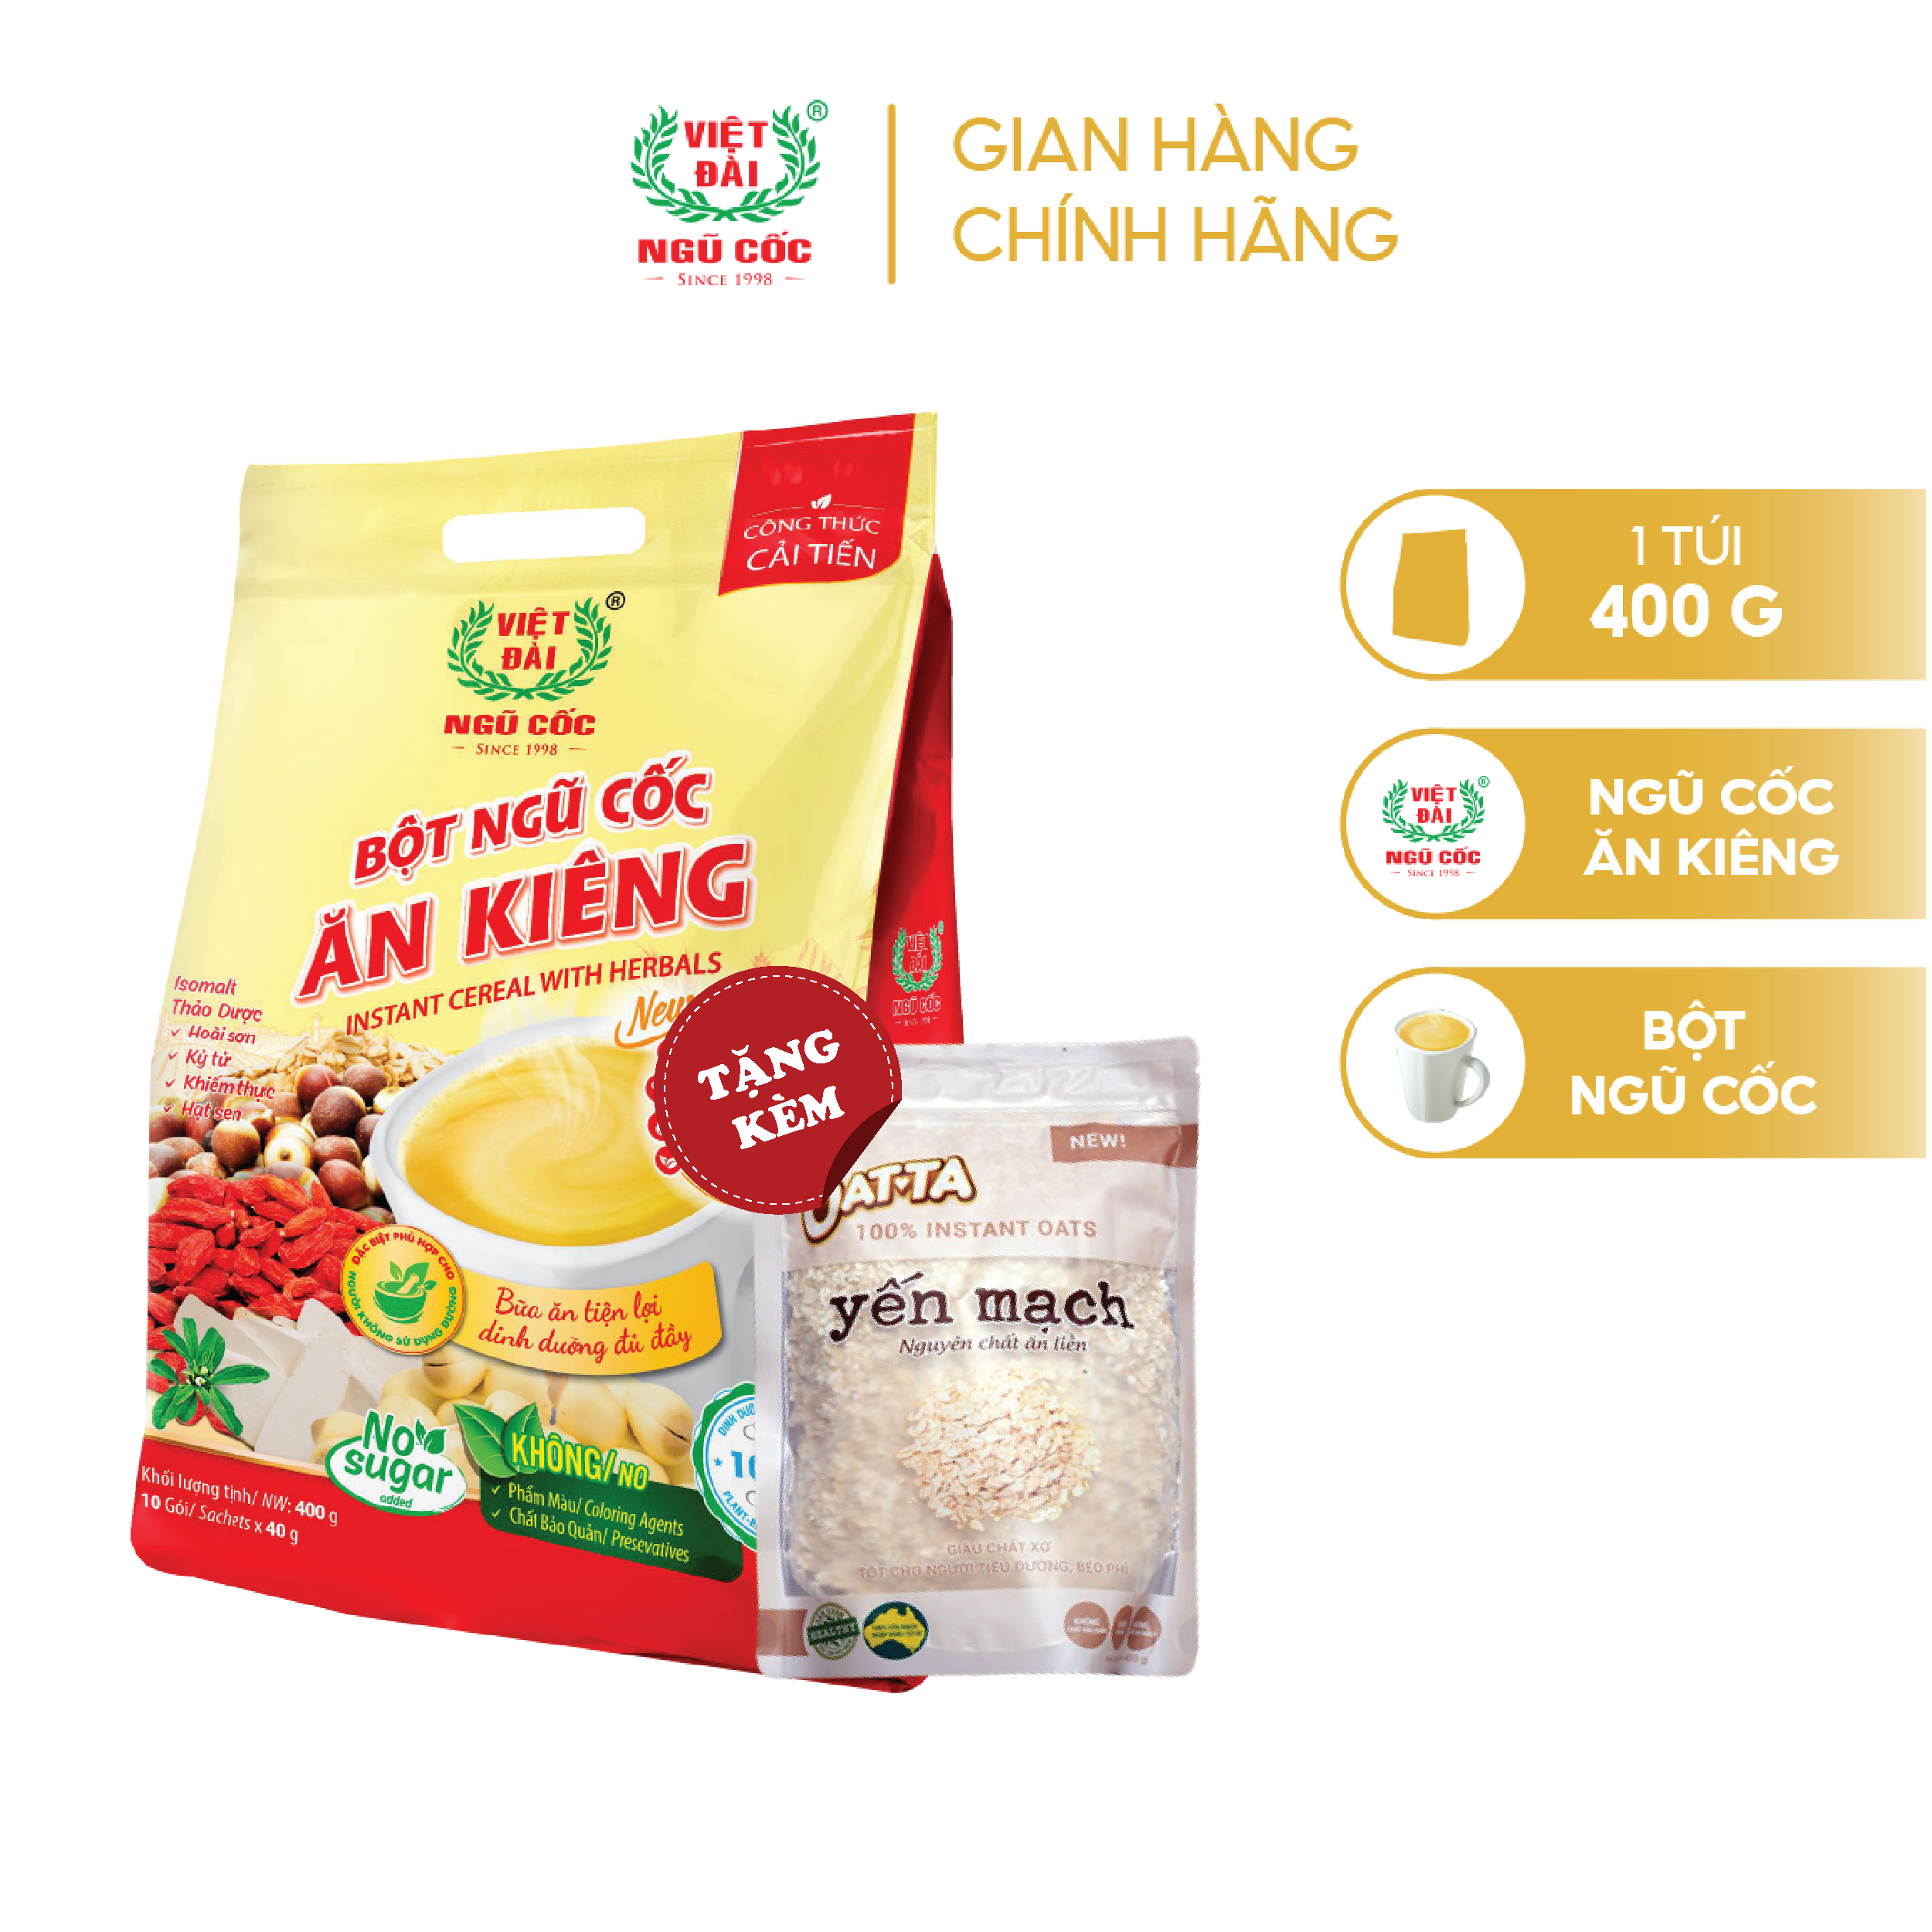 Bột ngũ cốc ăn kiêng Việt Đài túi 400g Tặng Yến mạch nguyên chất 100g